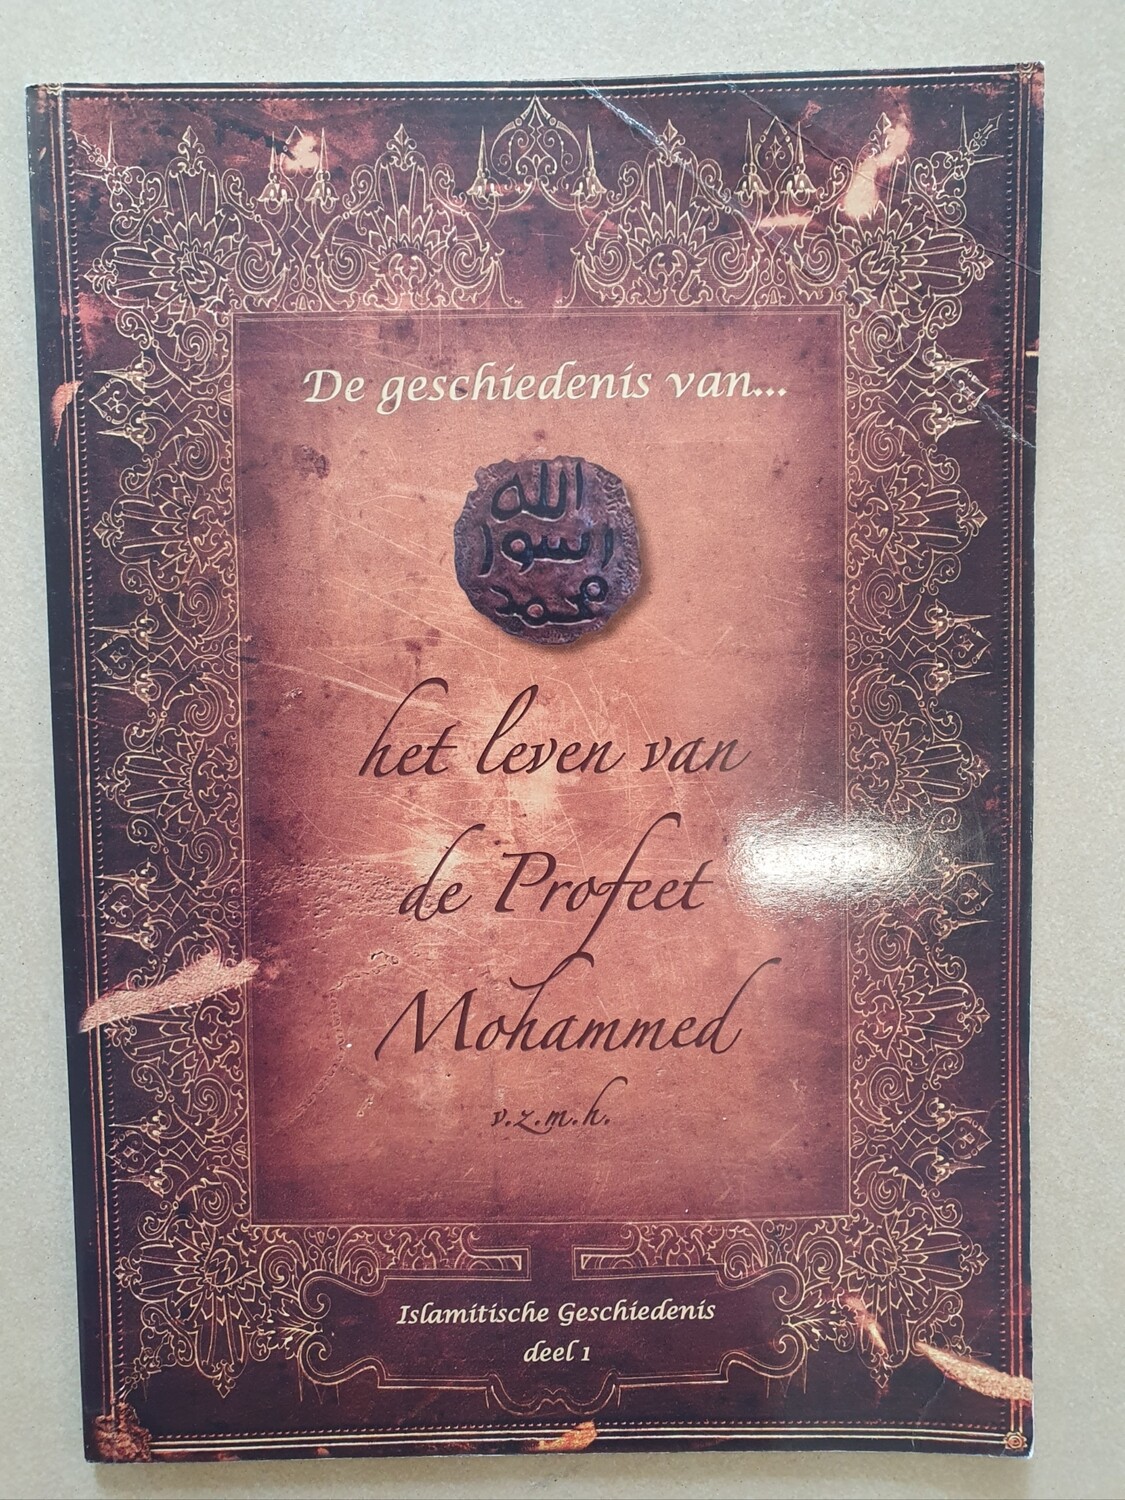 De geschiedenis van het leven van de profeet Mohammed deel 1